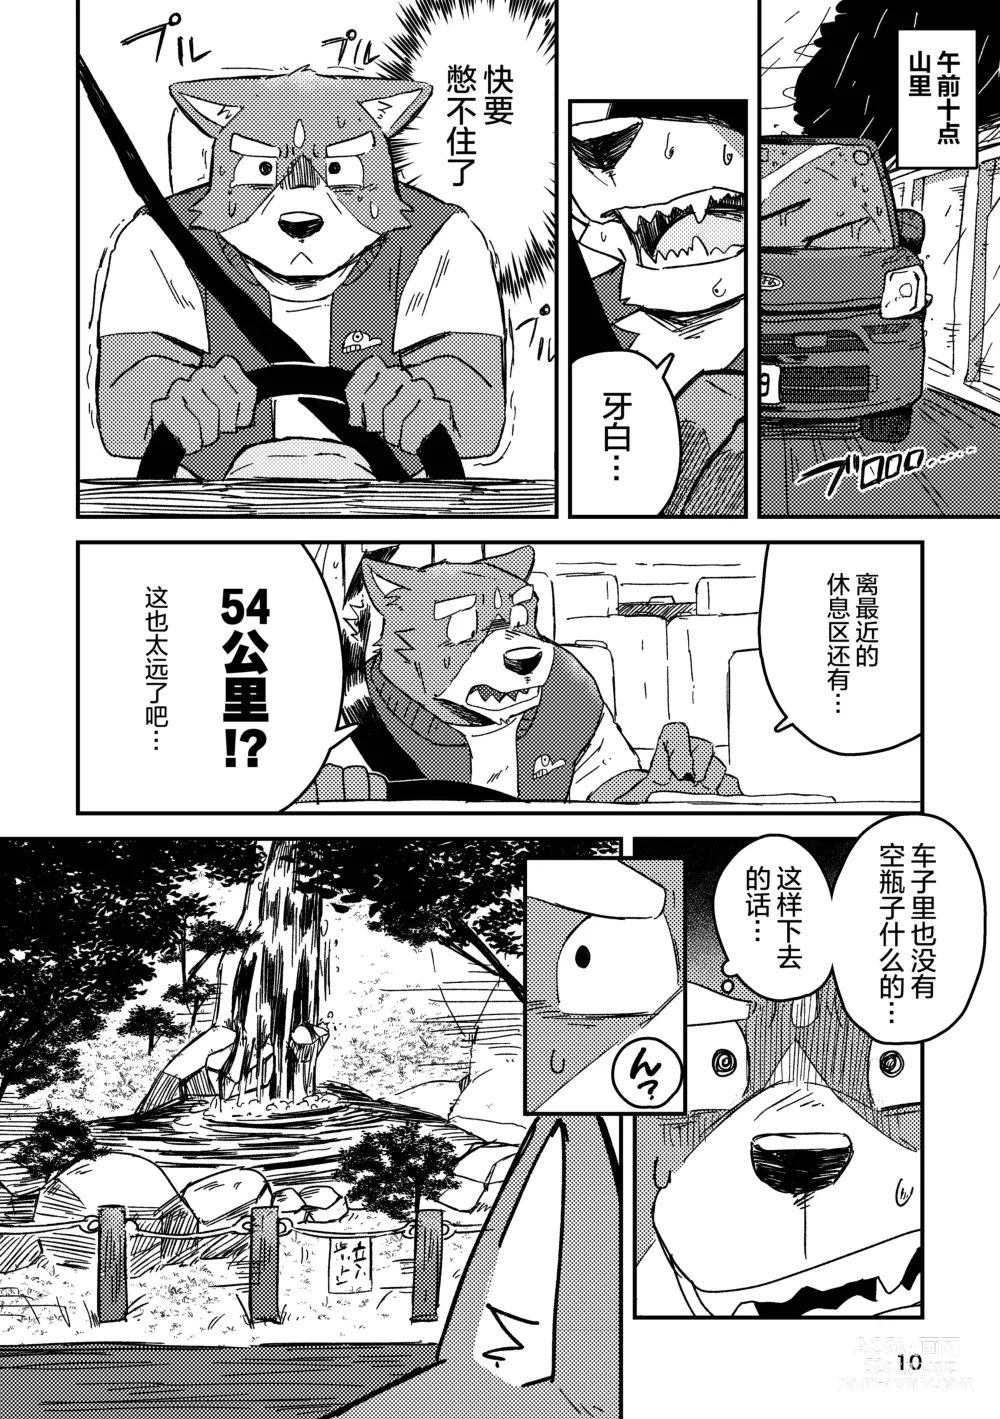 Page 10 of doujinshi 约定的龙穴